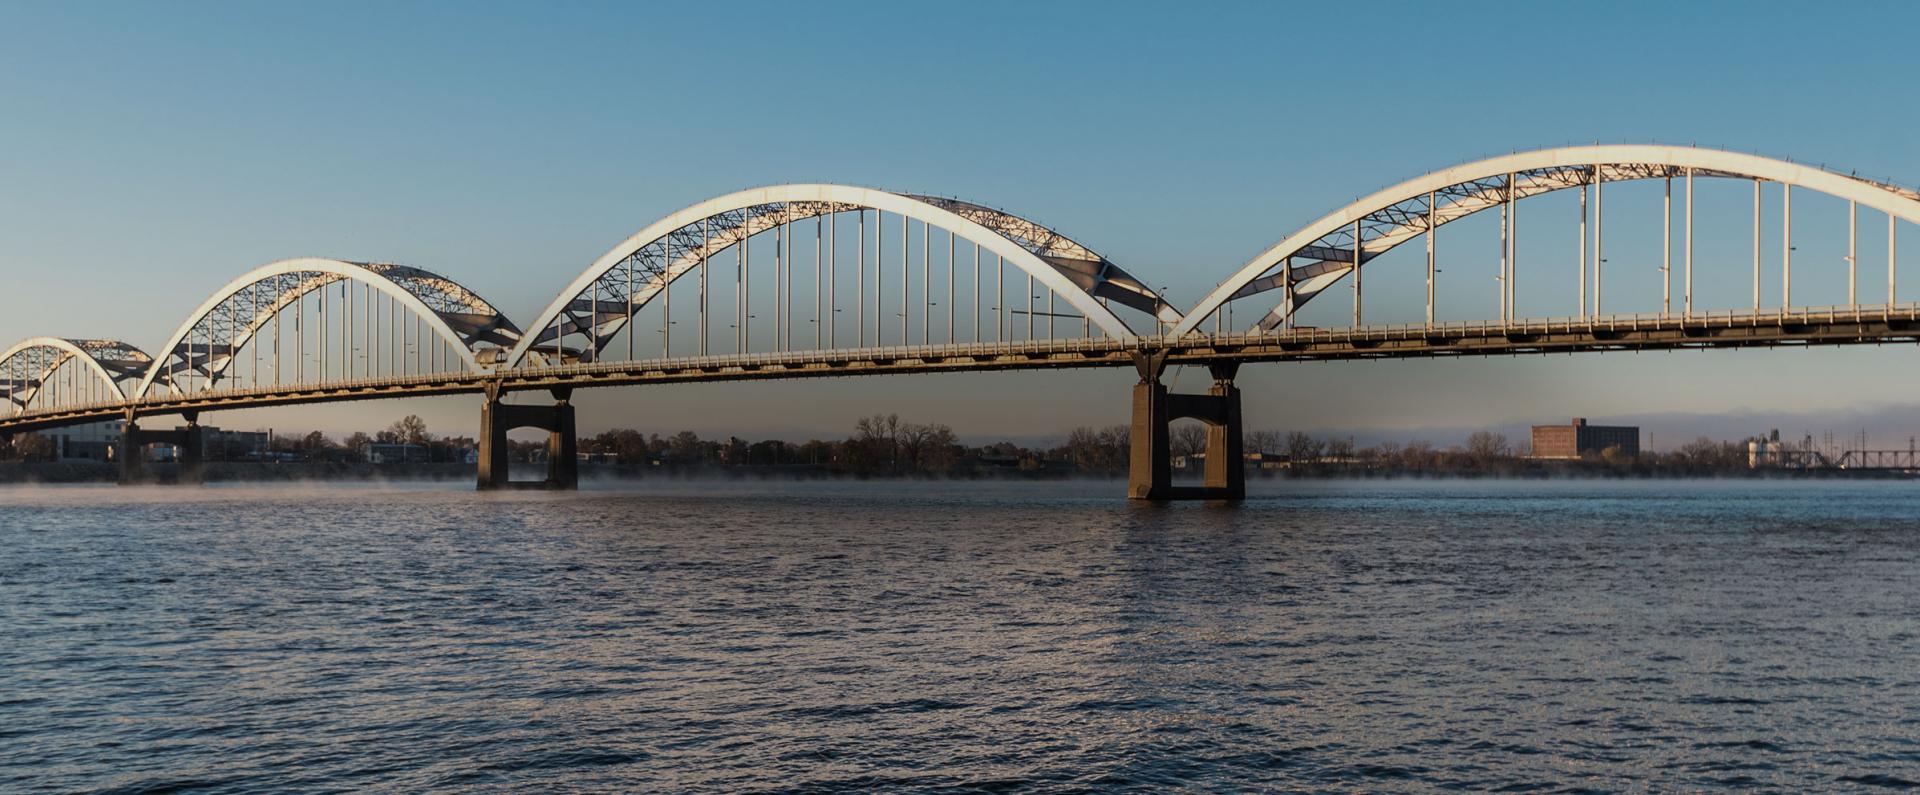 Bridge across the water in Davenport Iowa